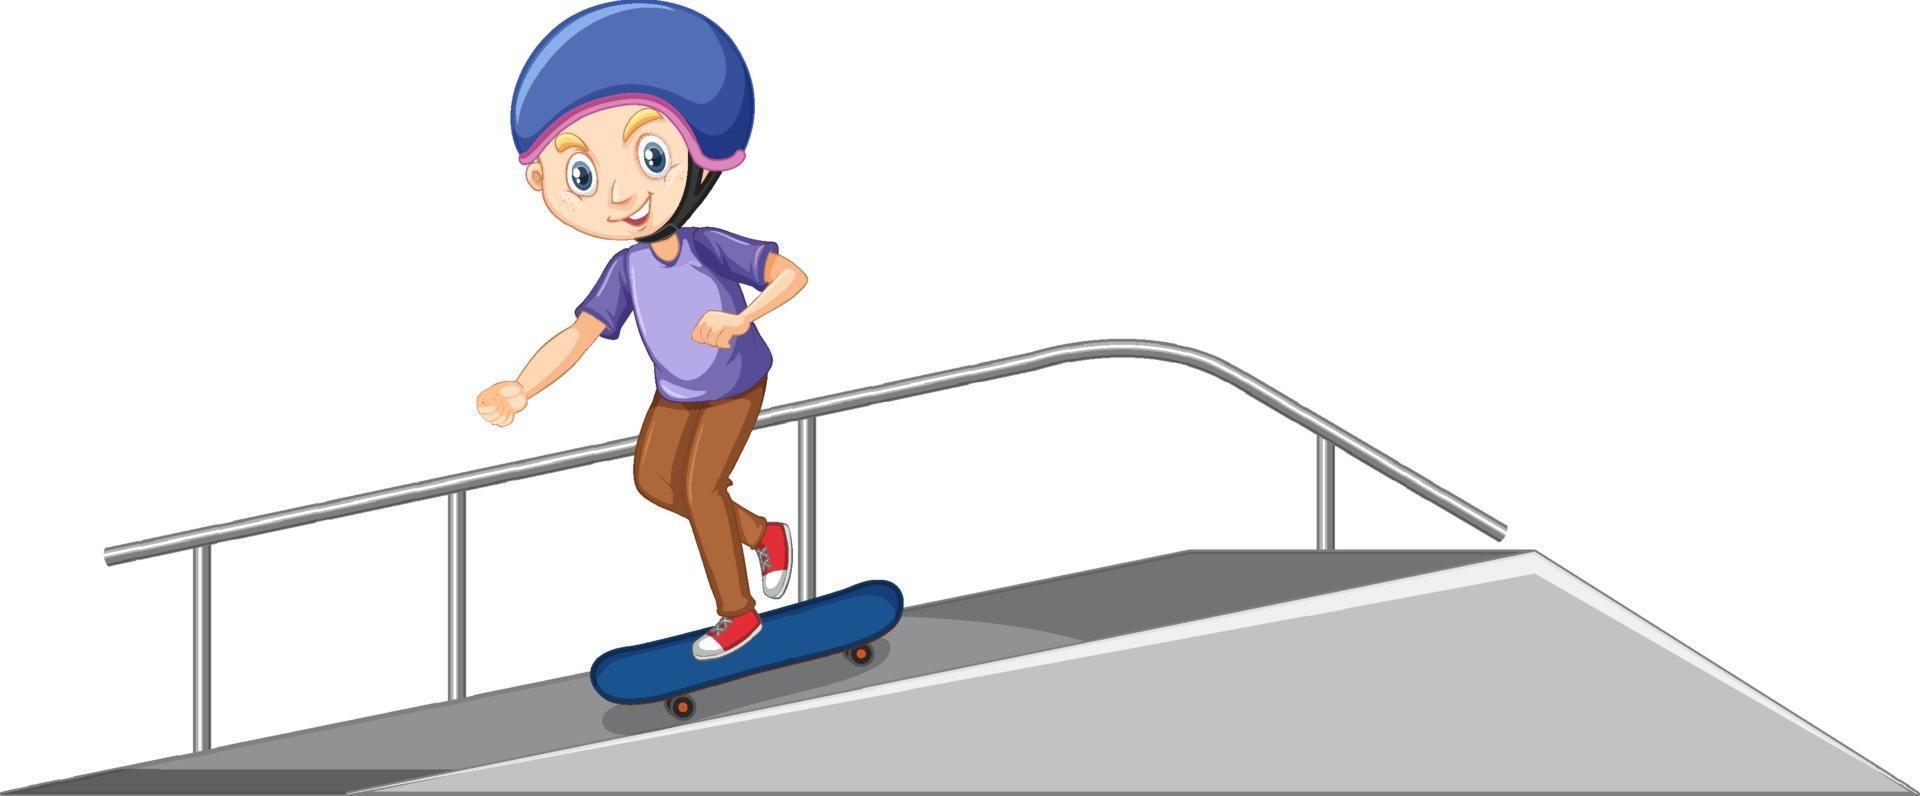 ragazzo che gioca a skateboard sulla rampa su sfondo bianco vettore